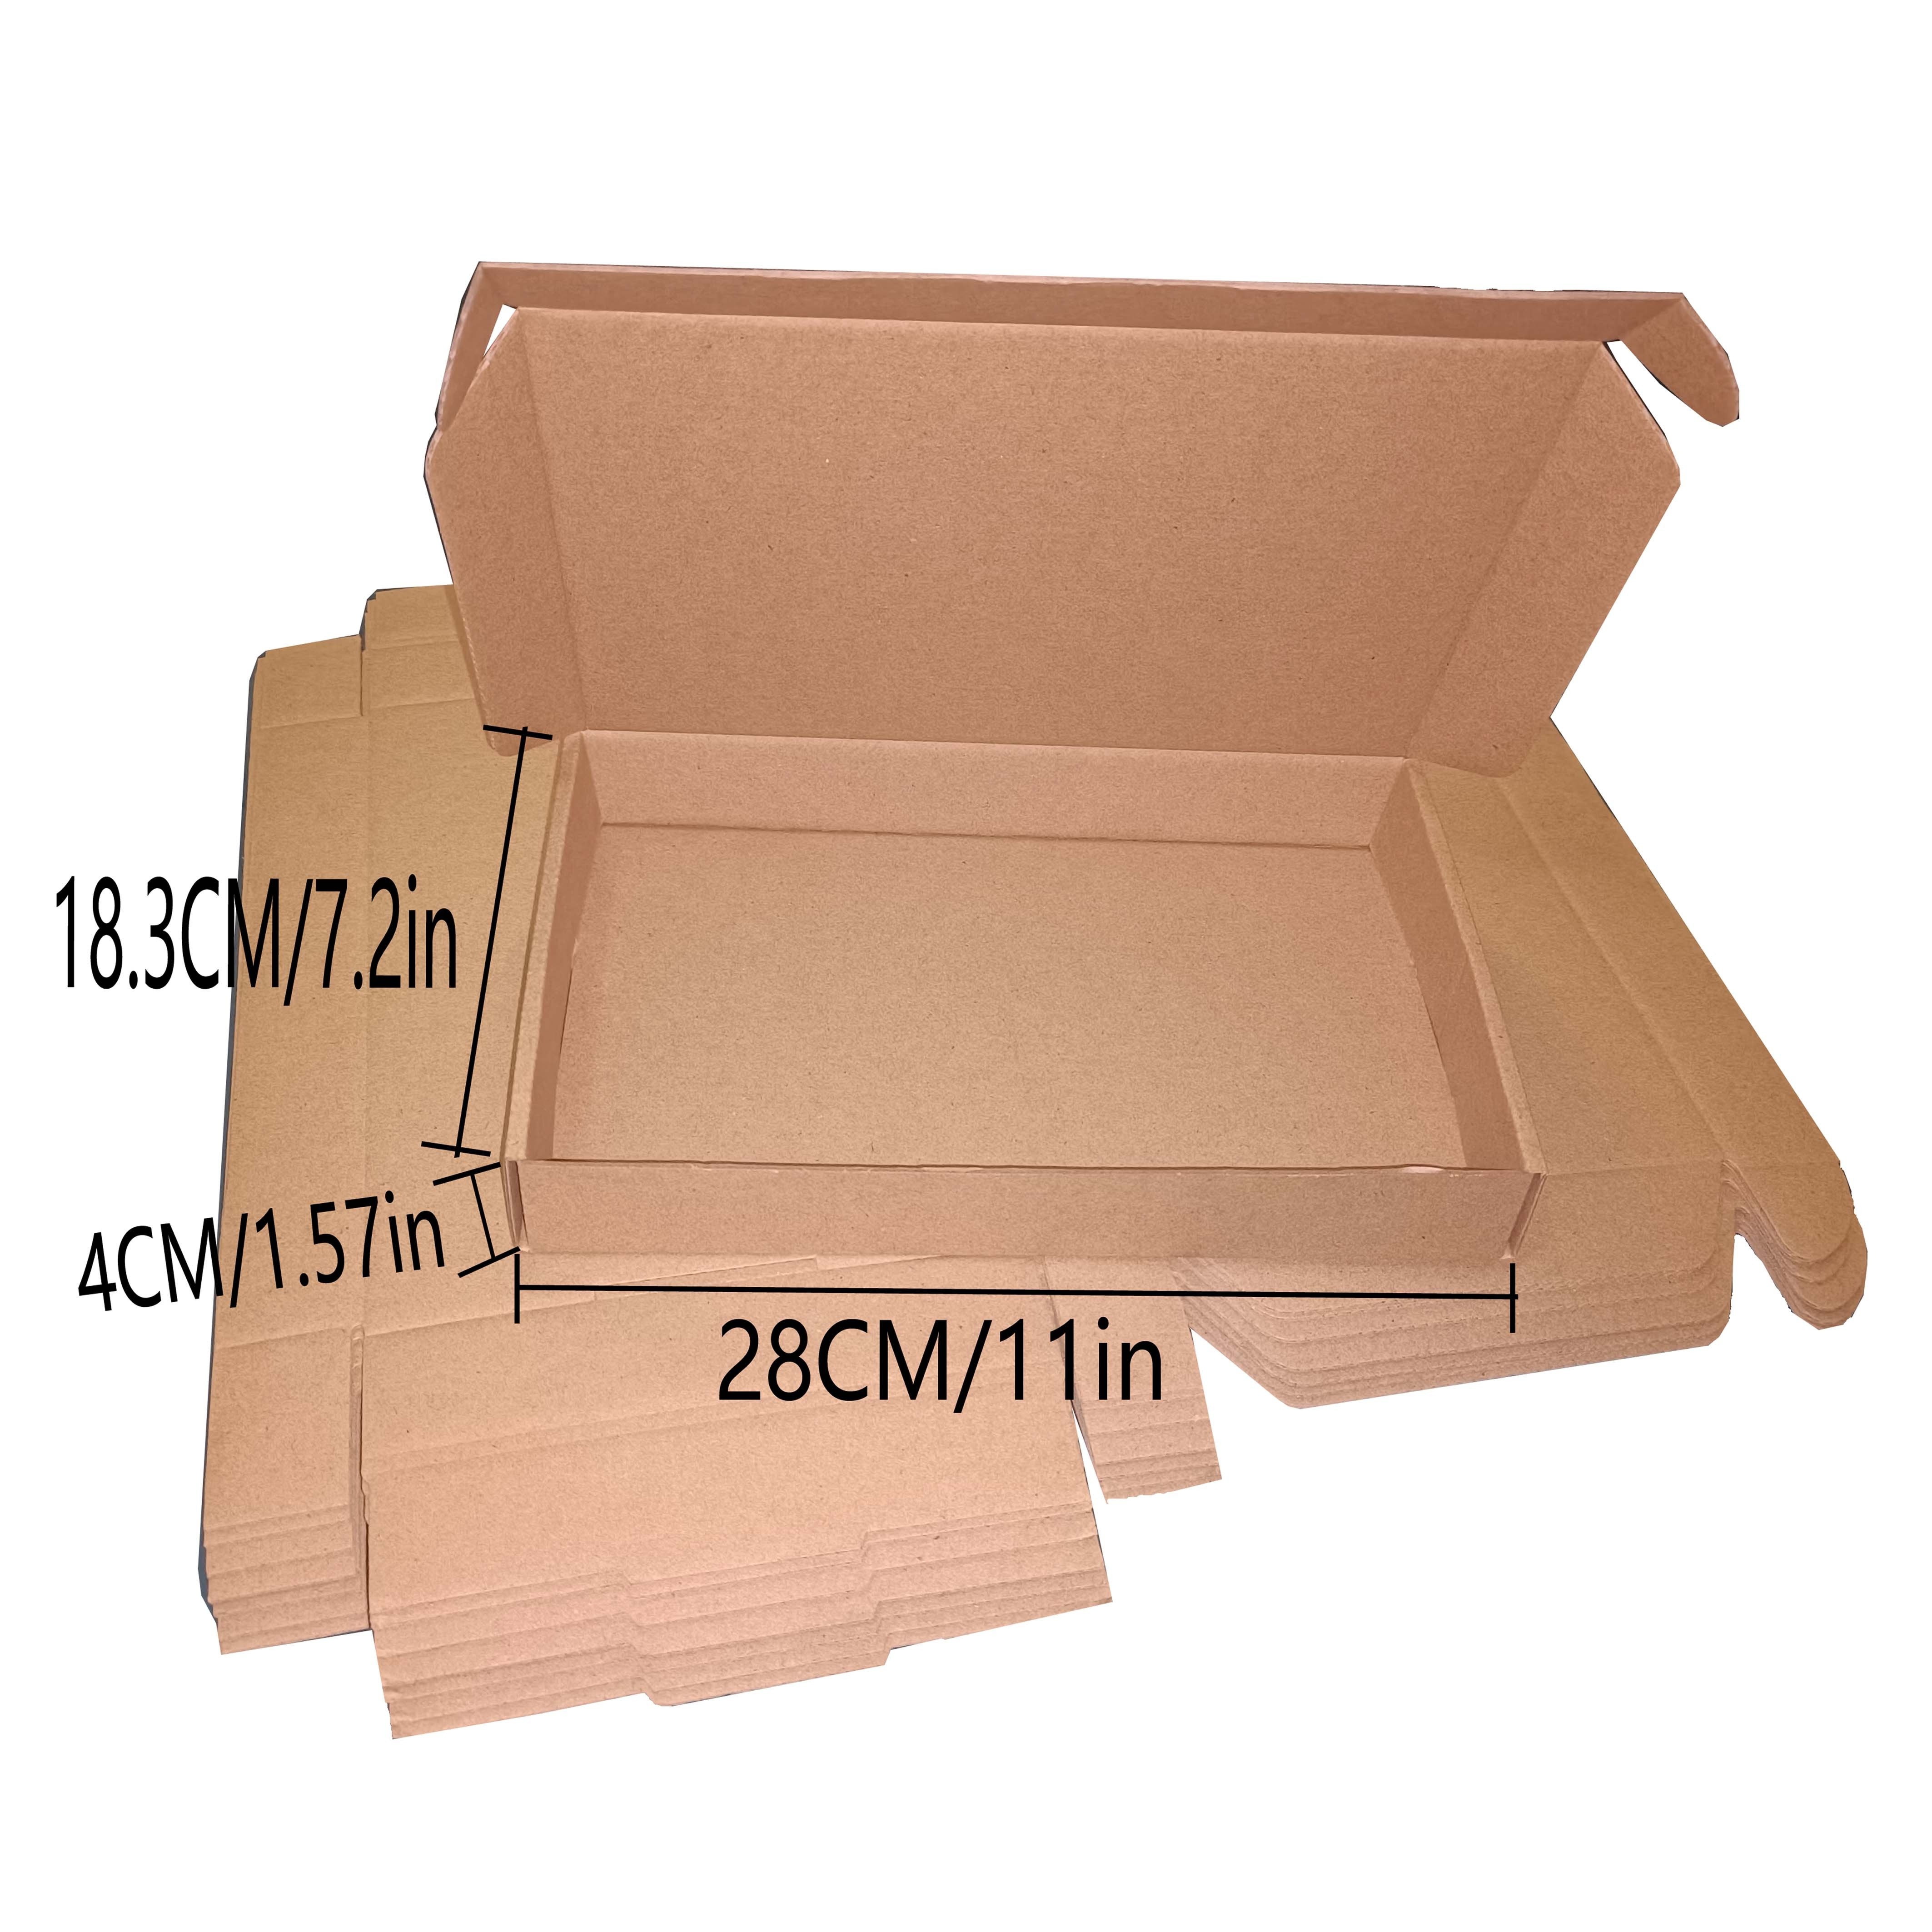 Paquete de 25 cajas de envío de cartón, cajas de cartón corrugado marrón de  7.2 x 5.2 x 2 pulgadas para embalaje de pequeñas empresas, cajas de papel